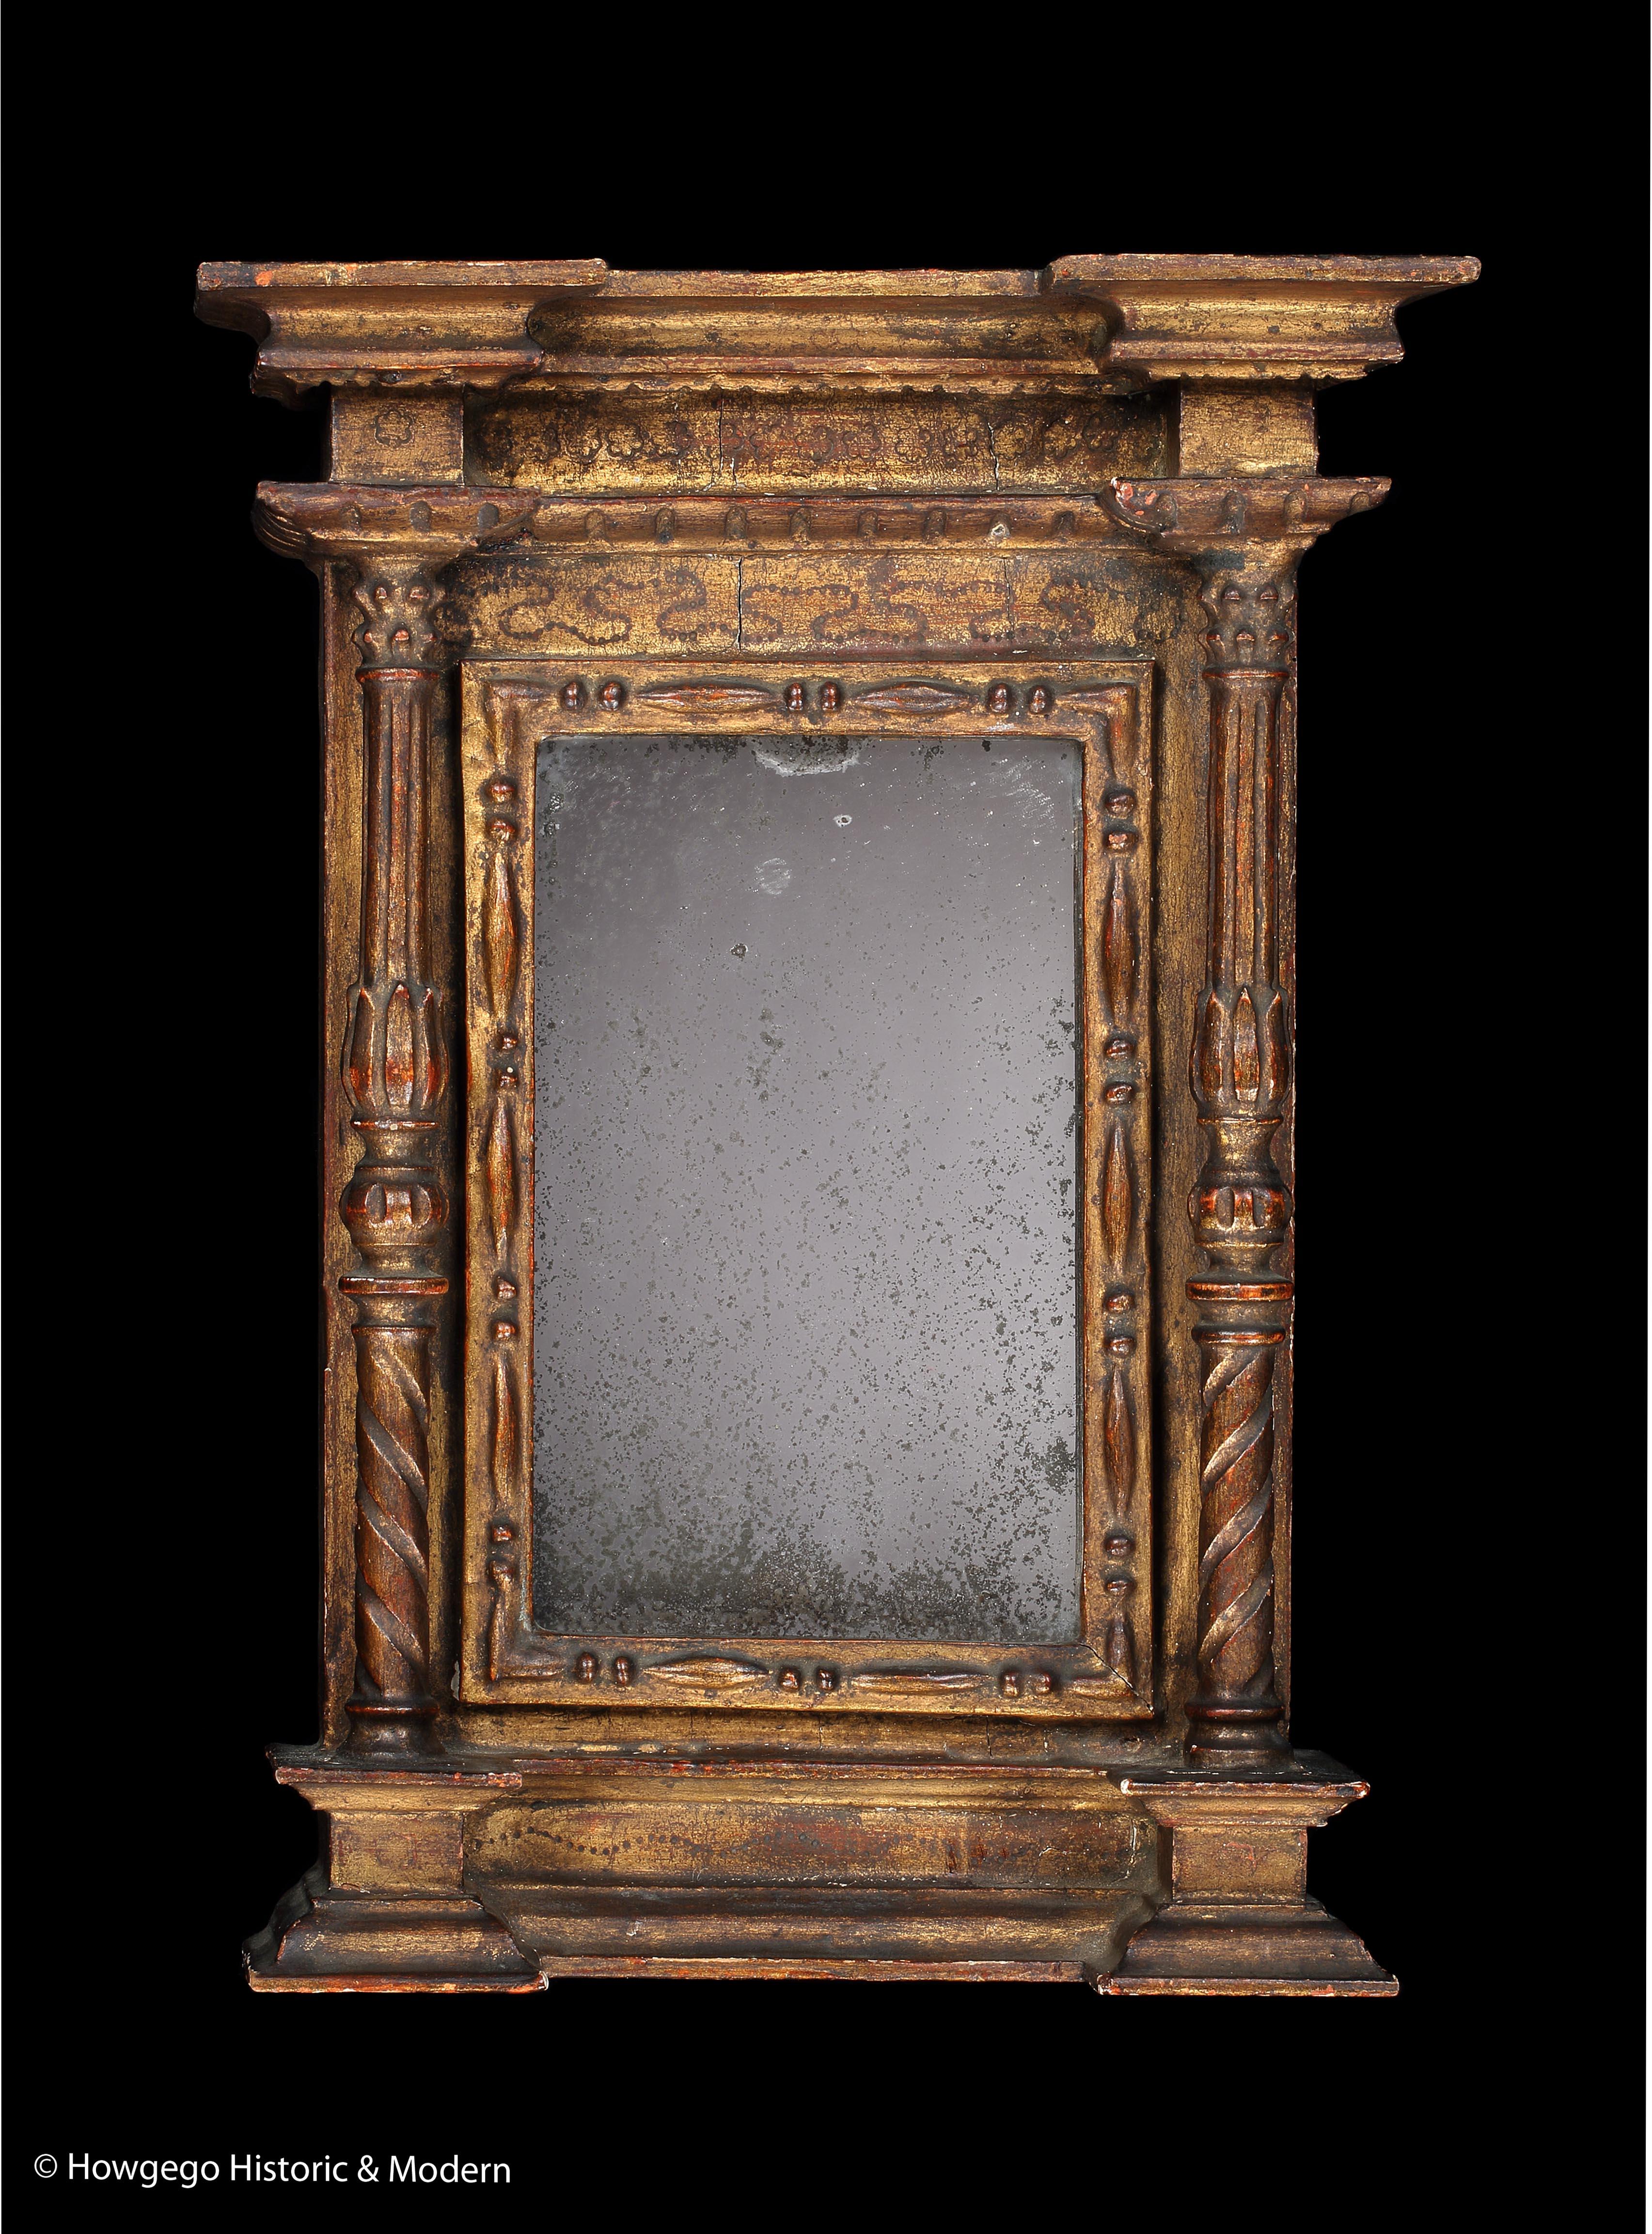 Miroir néoclassique italien doré, de la fin du 18e siècle, exceptionnellement rare et miniature

- Pièce de charme aux proportions exquises, présentant une variété d'ornements néo-classiques fins et caractéristiques 
- Exceptionnellement, rare